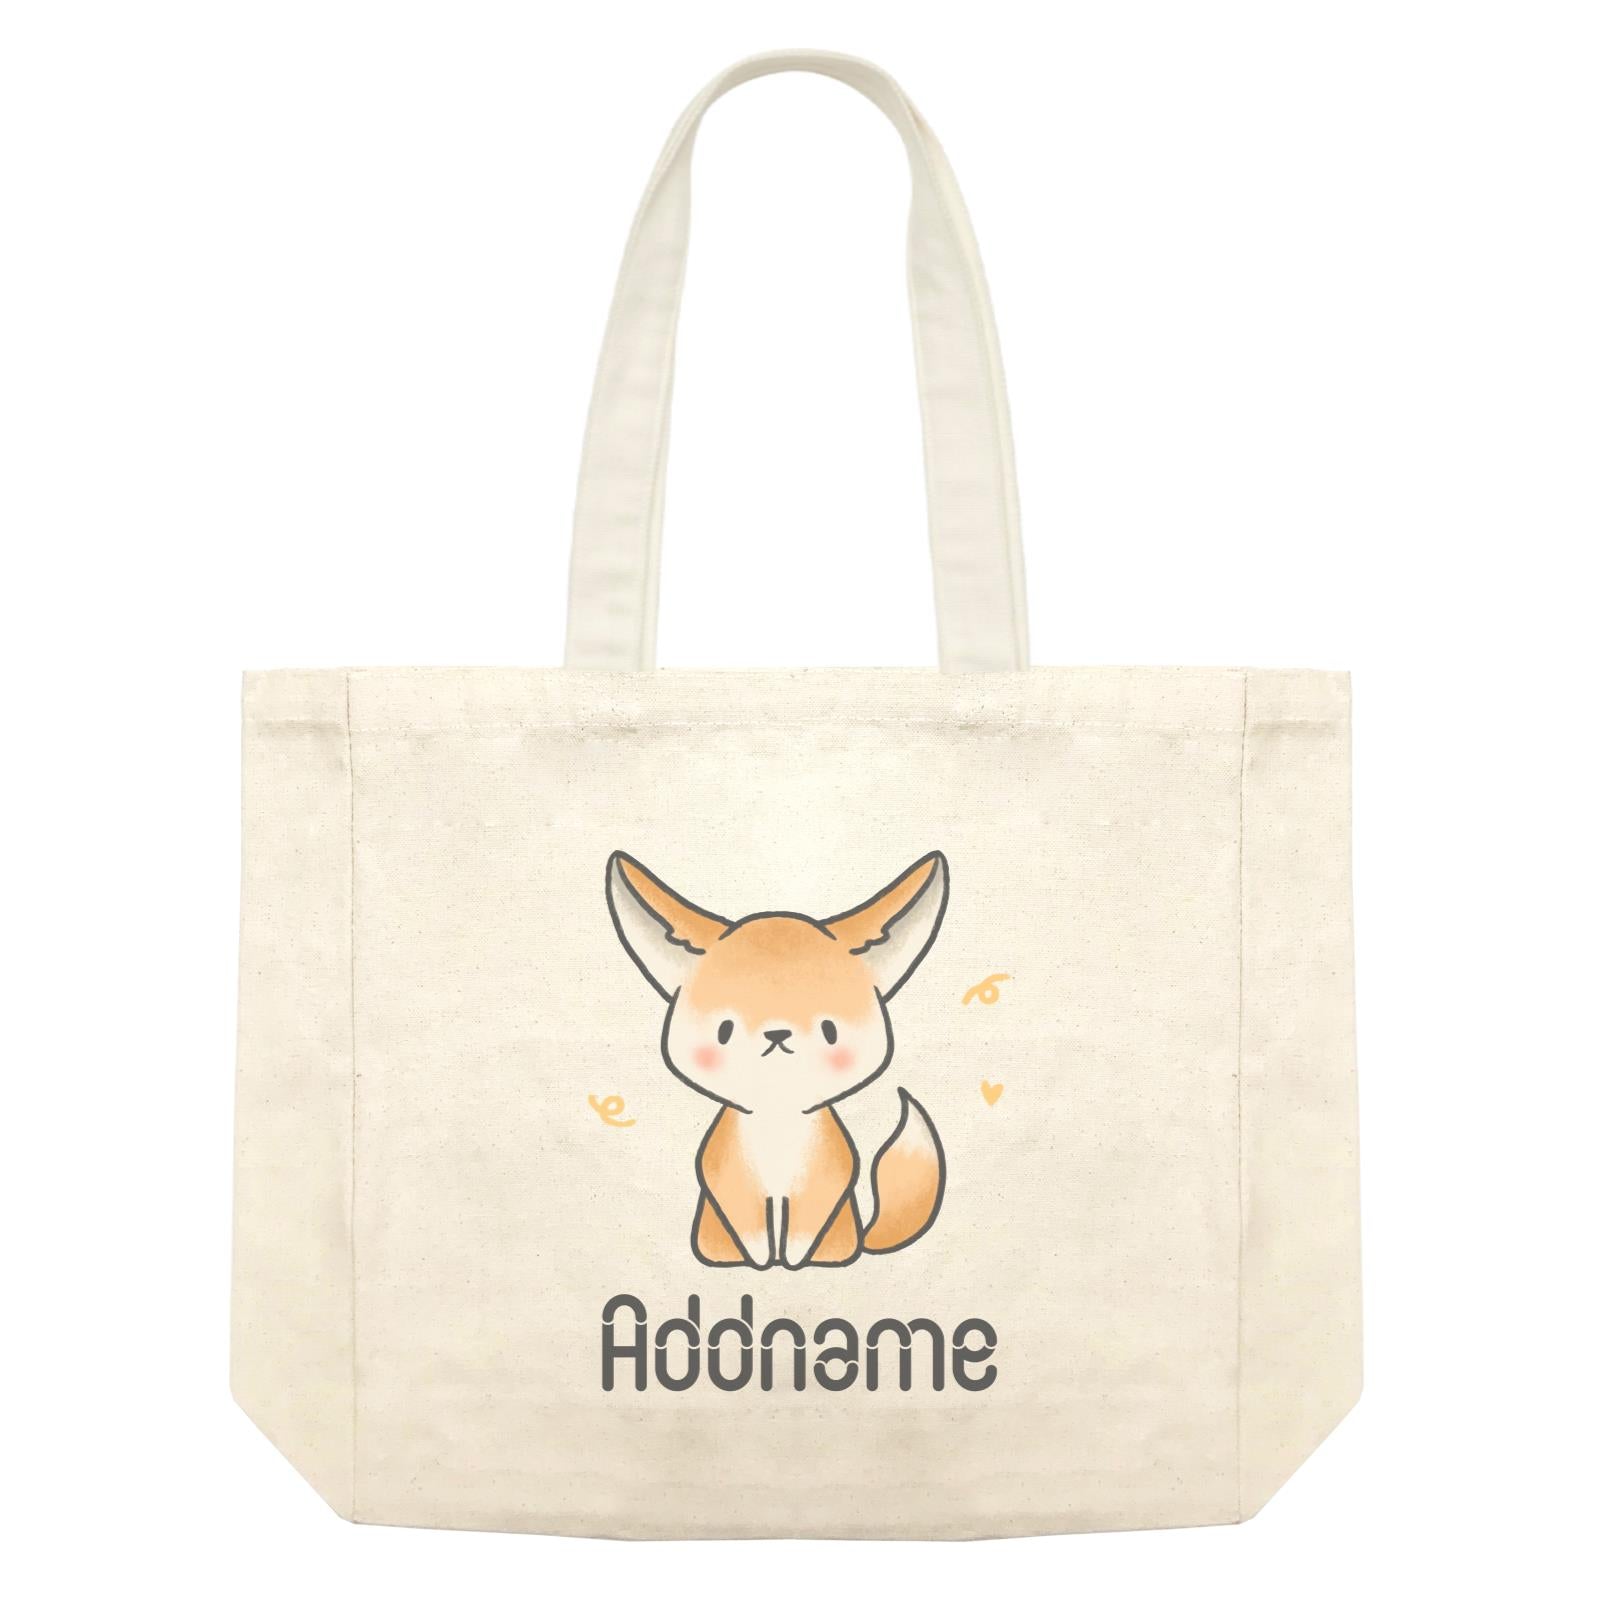 Cute Hand Drawn Style Fennec Fox Addname Shopping Bag